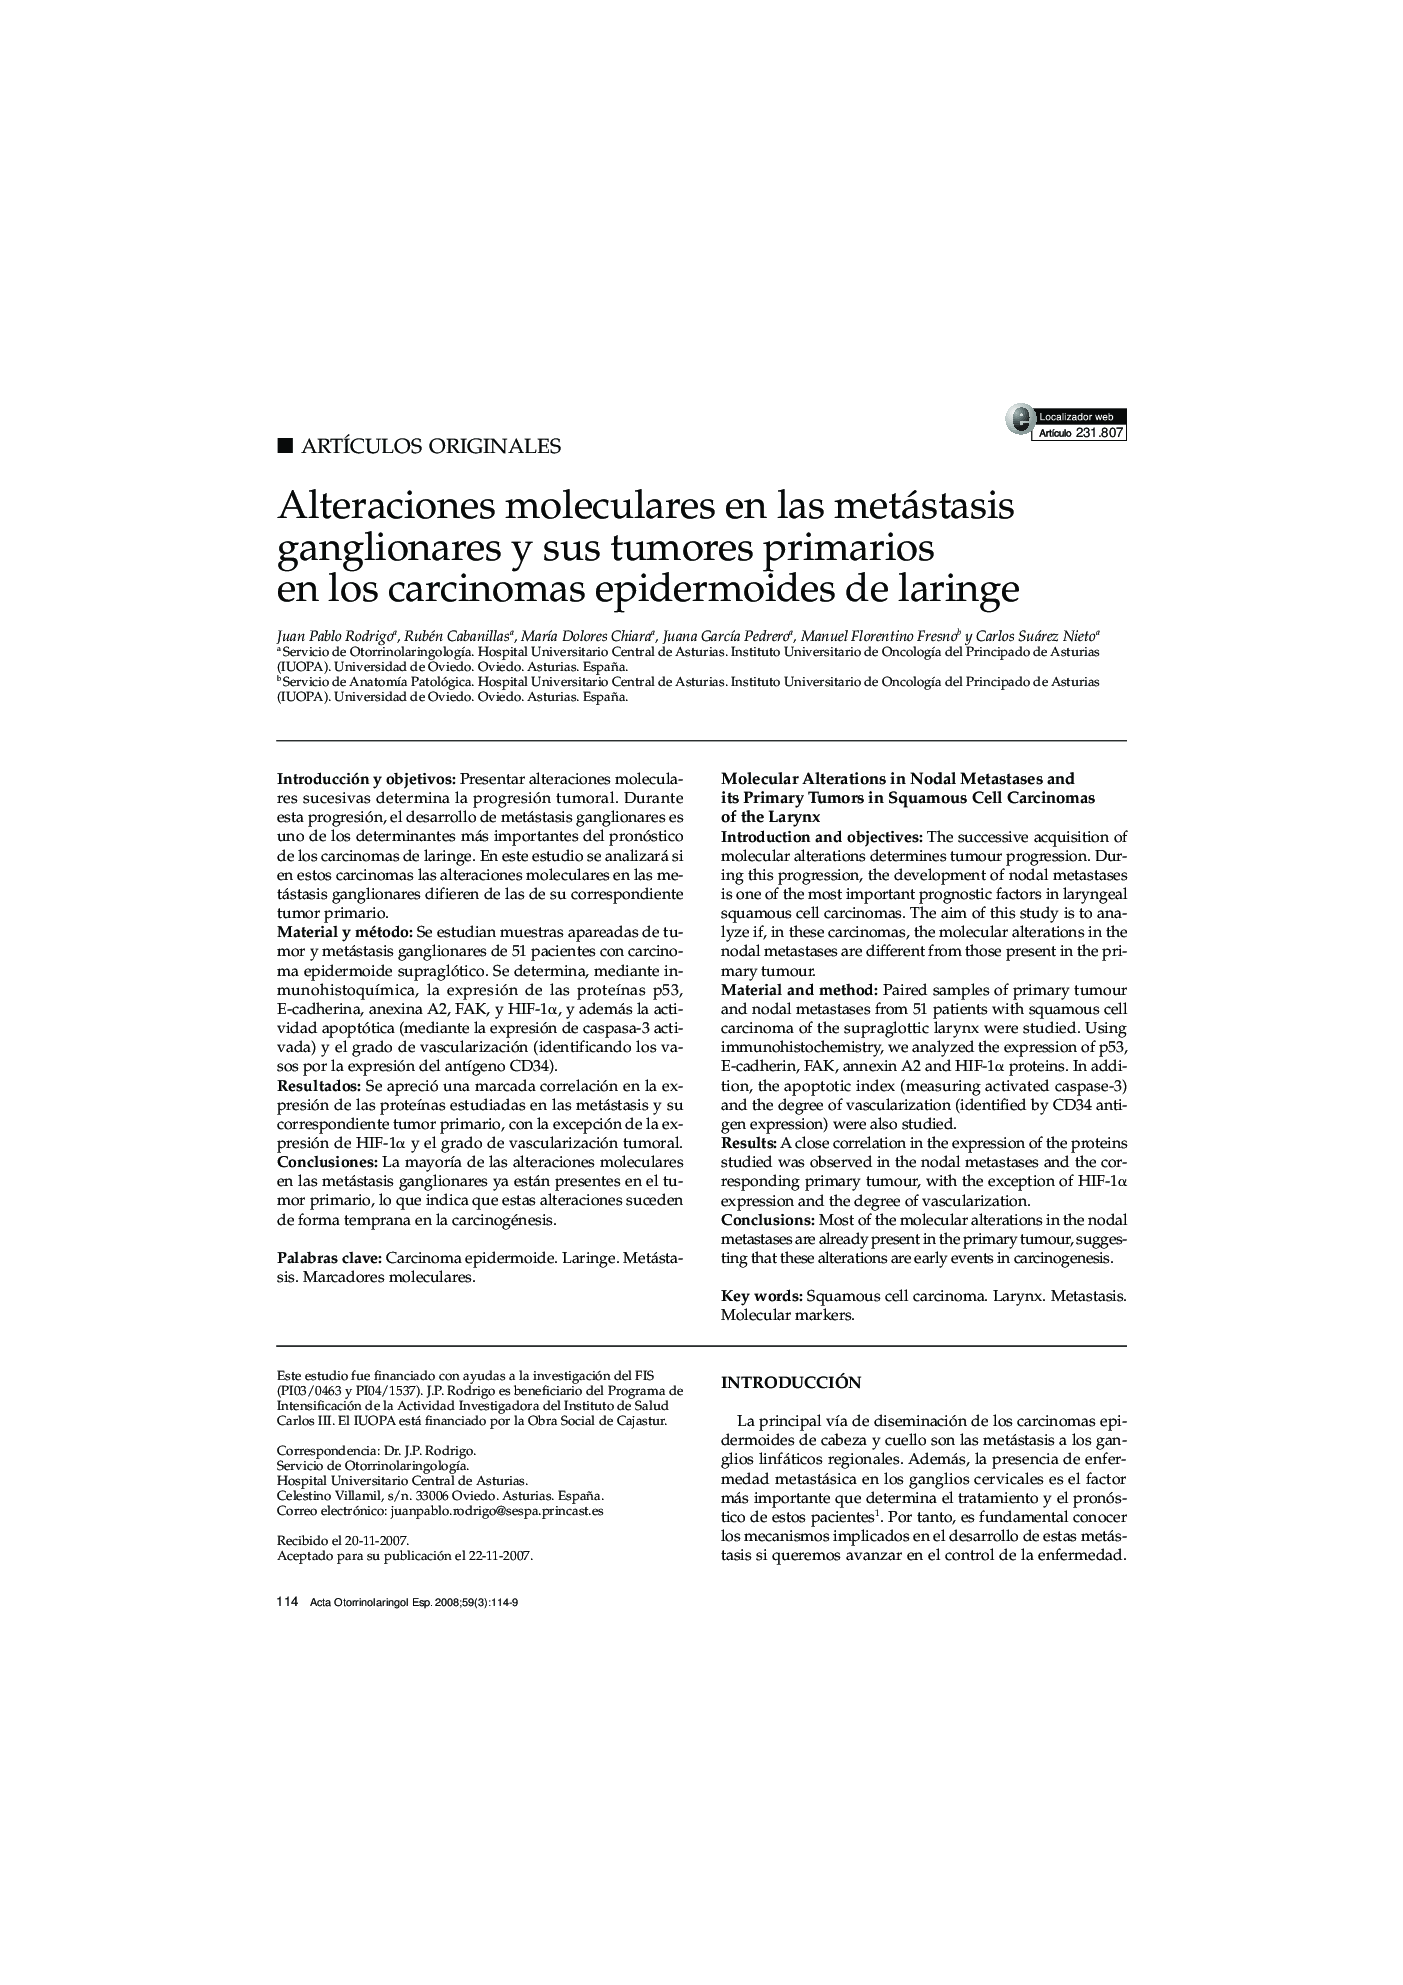 Alteraciones moleculares en las metástasis ganglionares y sus tumores primarios en los carcinomas epidermoides de laringe 